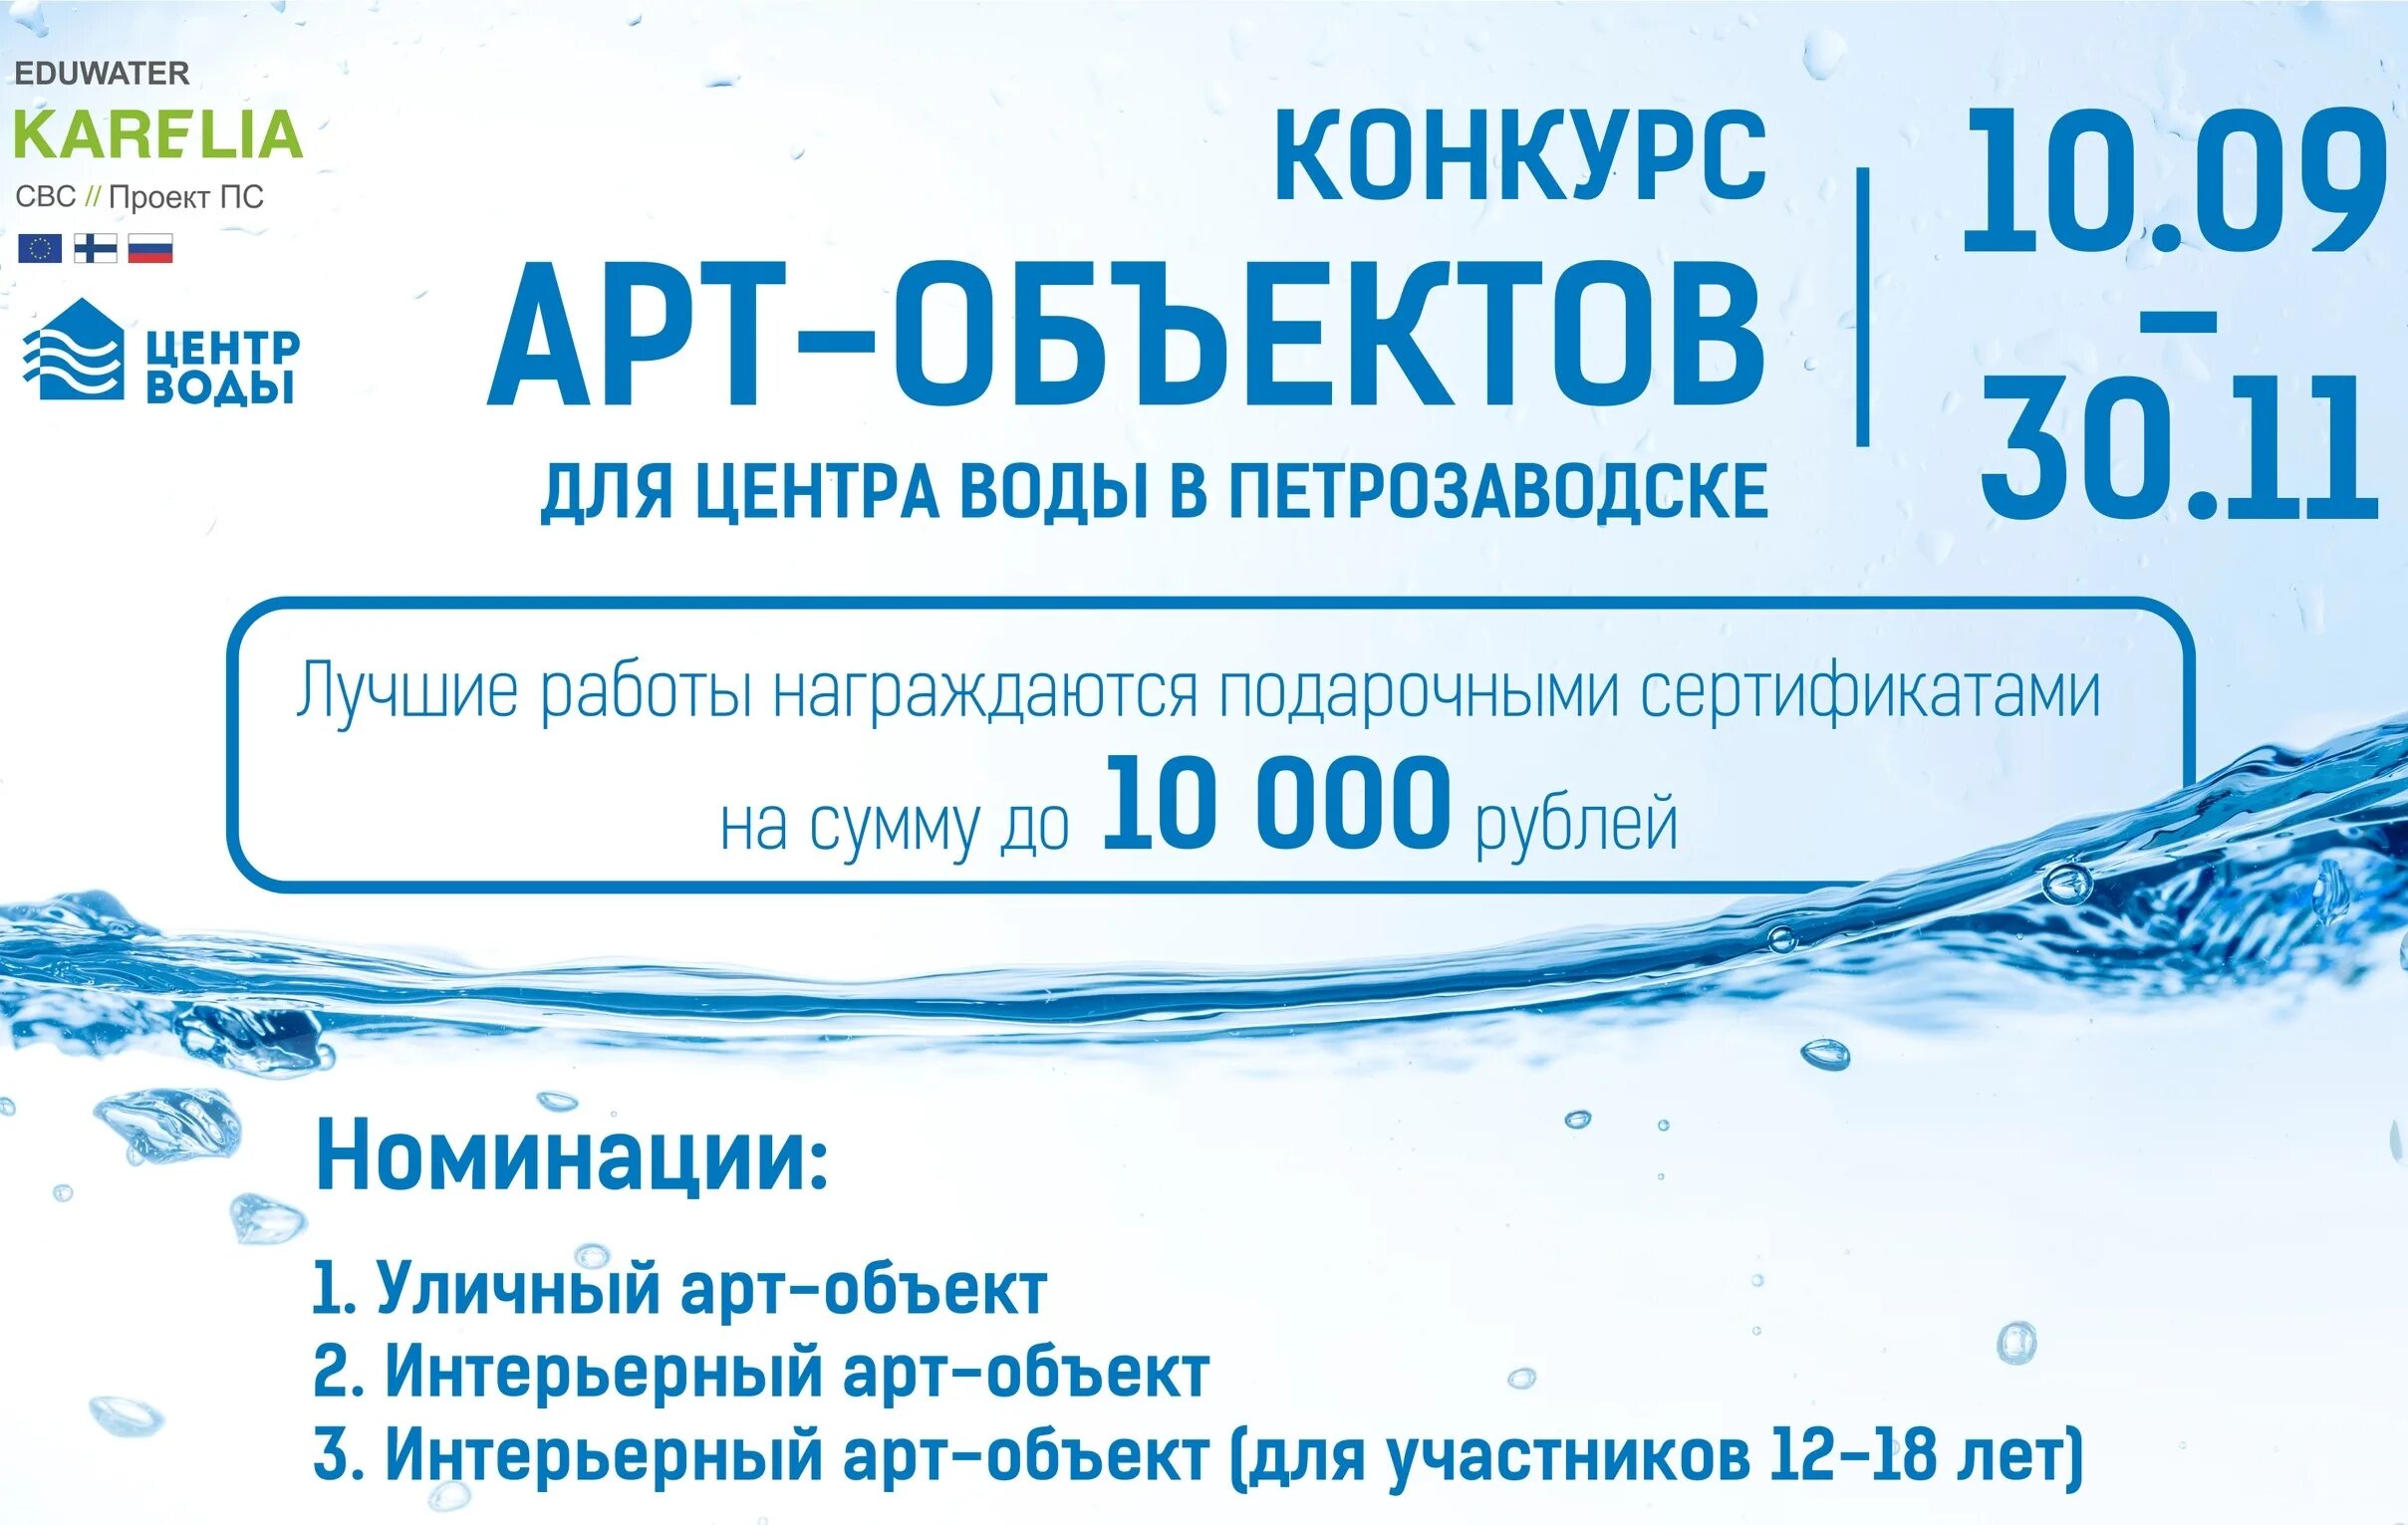 Центр вода в нижнем. Центр воды. Петрозаводск арты. Интерактив с водой. ПКС Водоканал Петрозаводск logo.